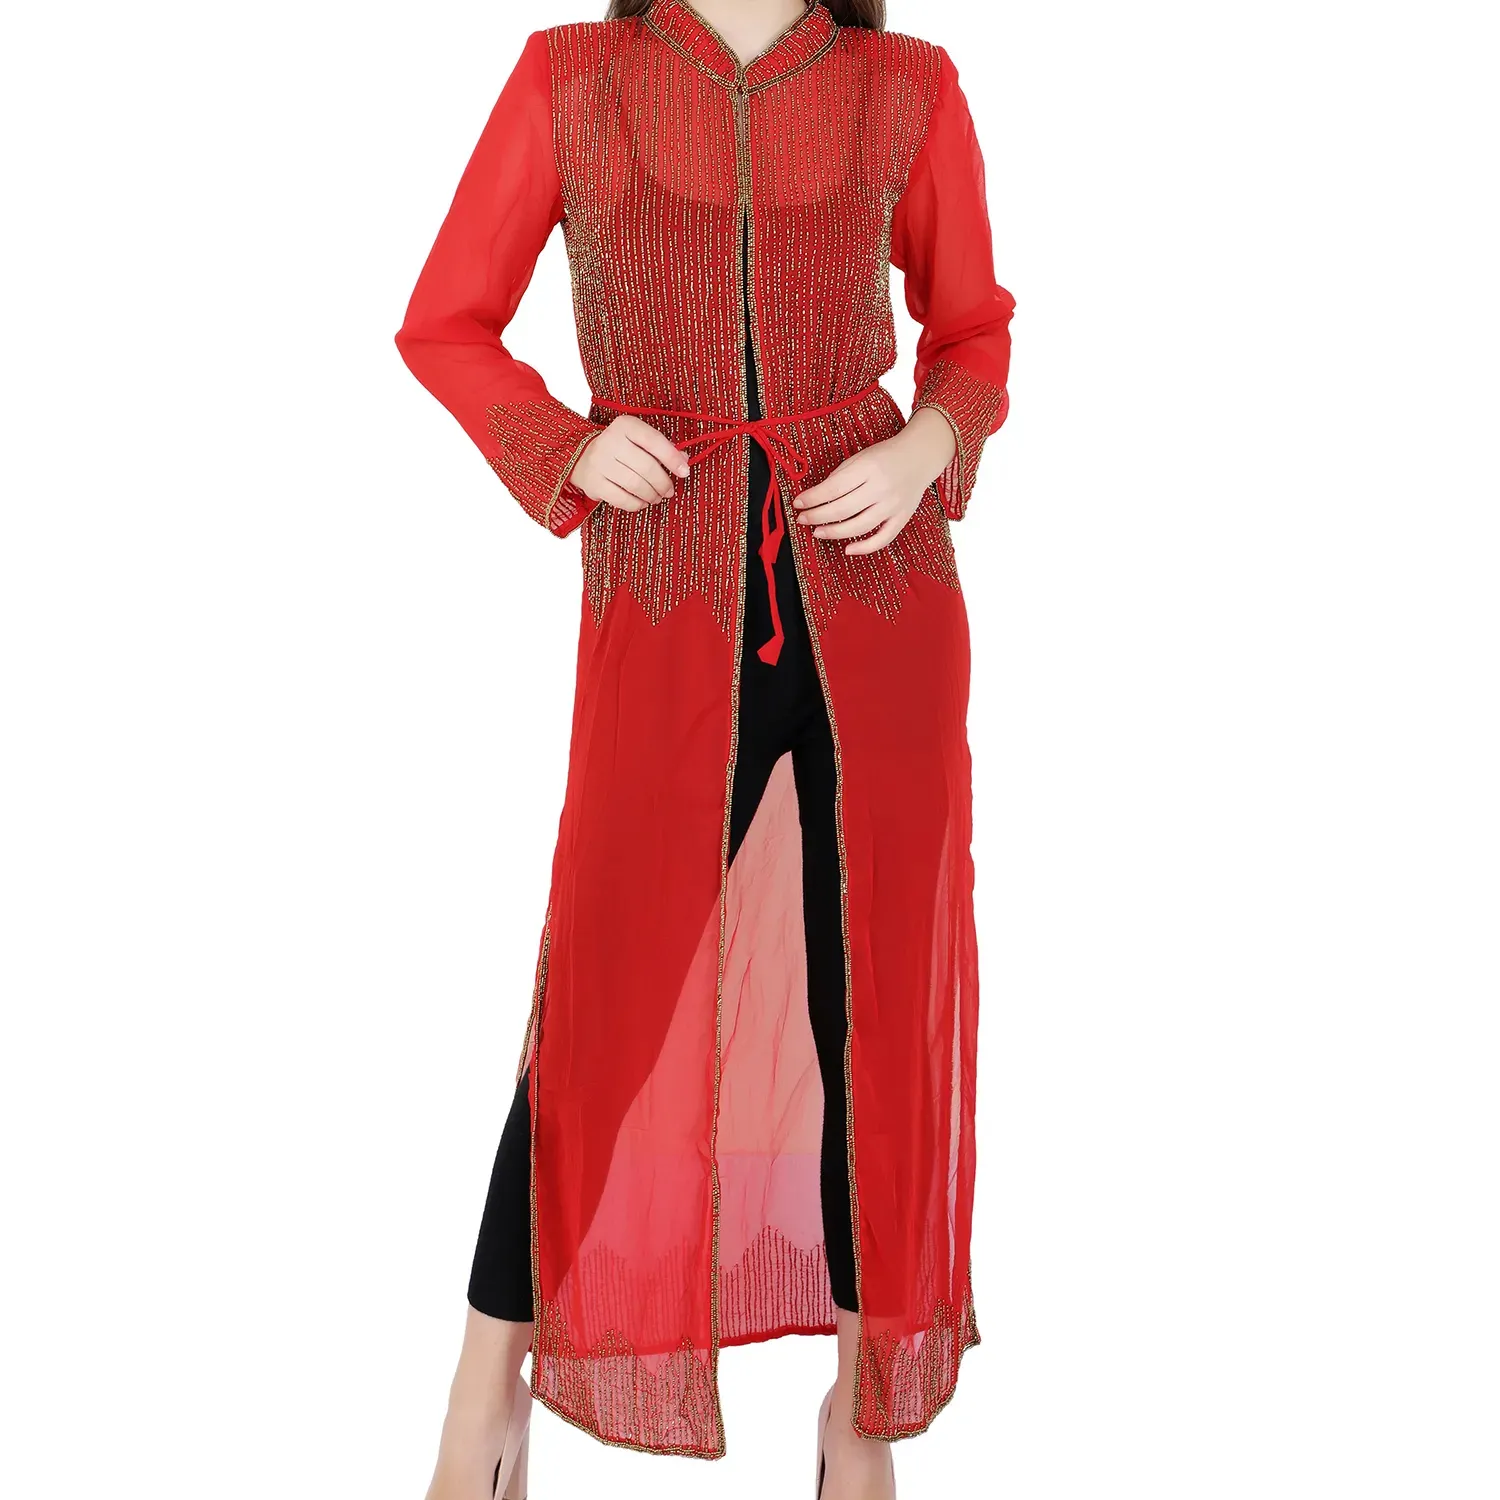 Lujoso terciopelo modestia abierto Kaftan Abaya vestido correa de espagueti perfecto ropa de noche para mujeres musulmanas regalo